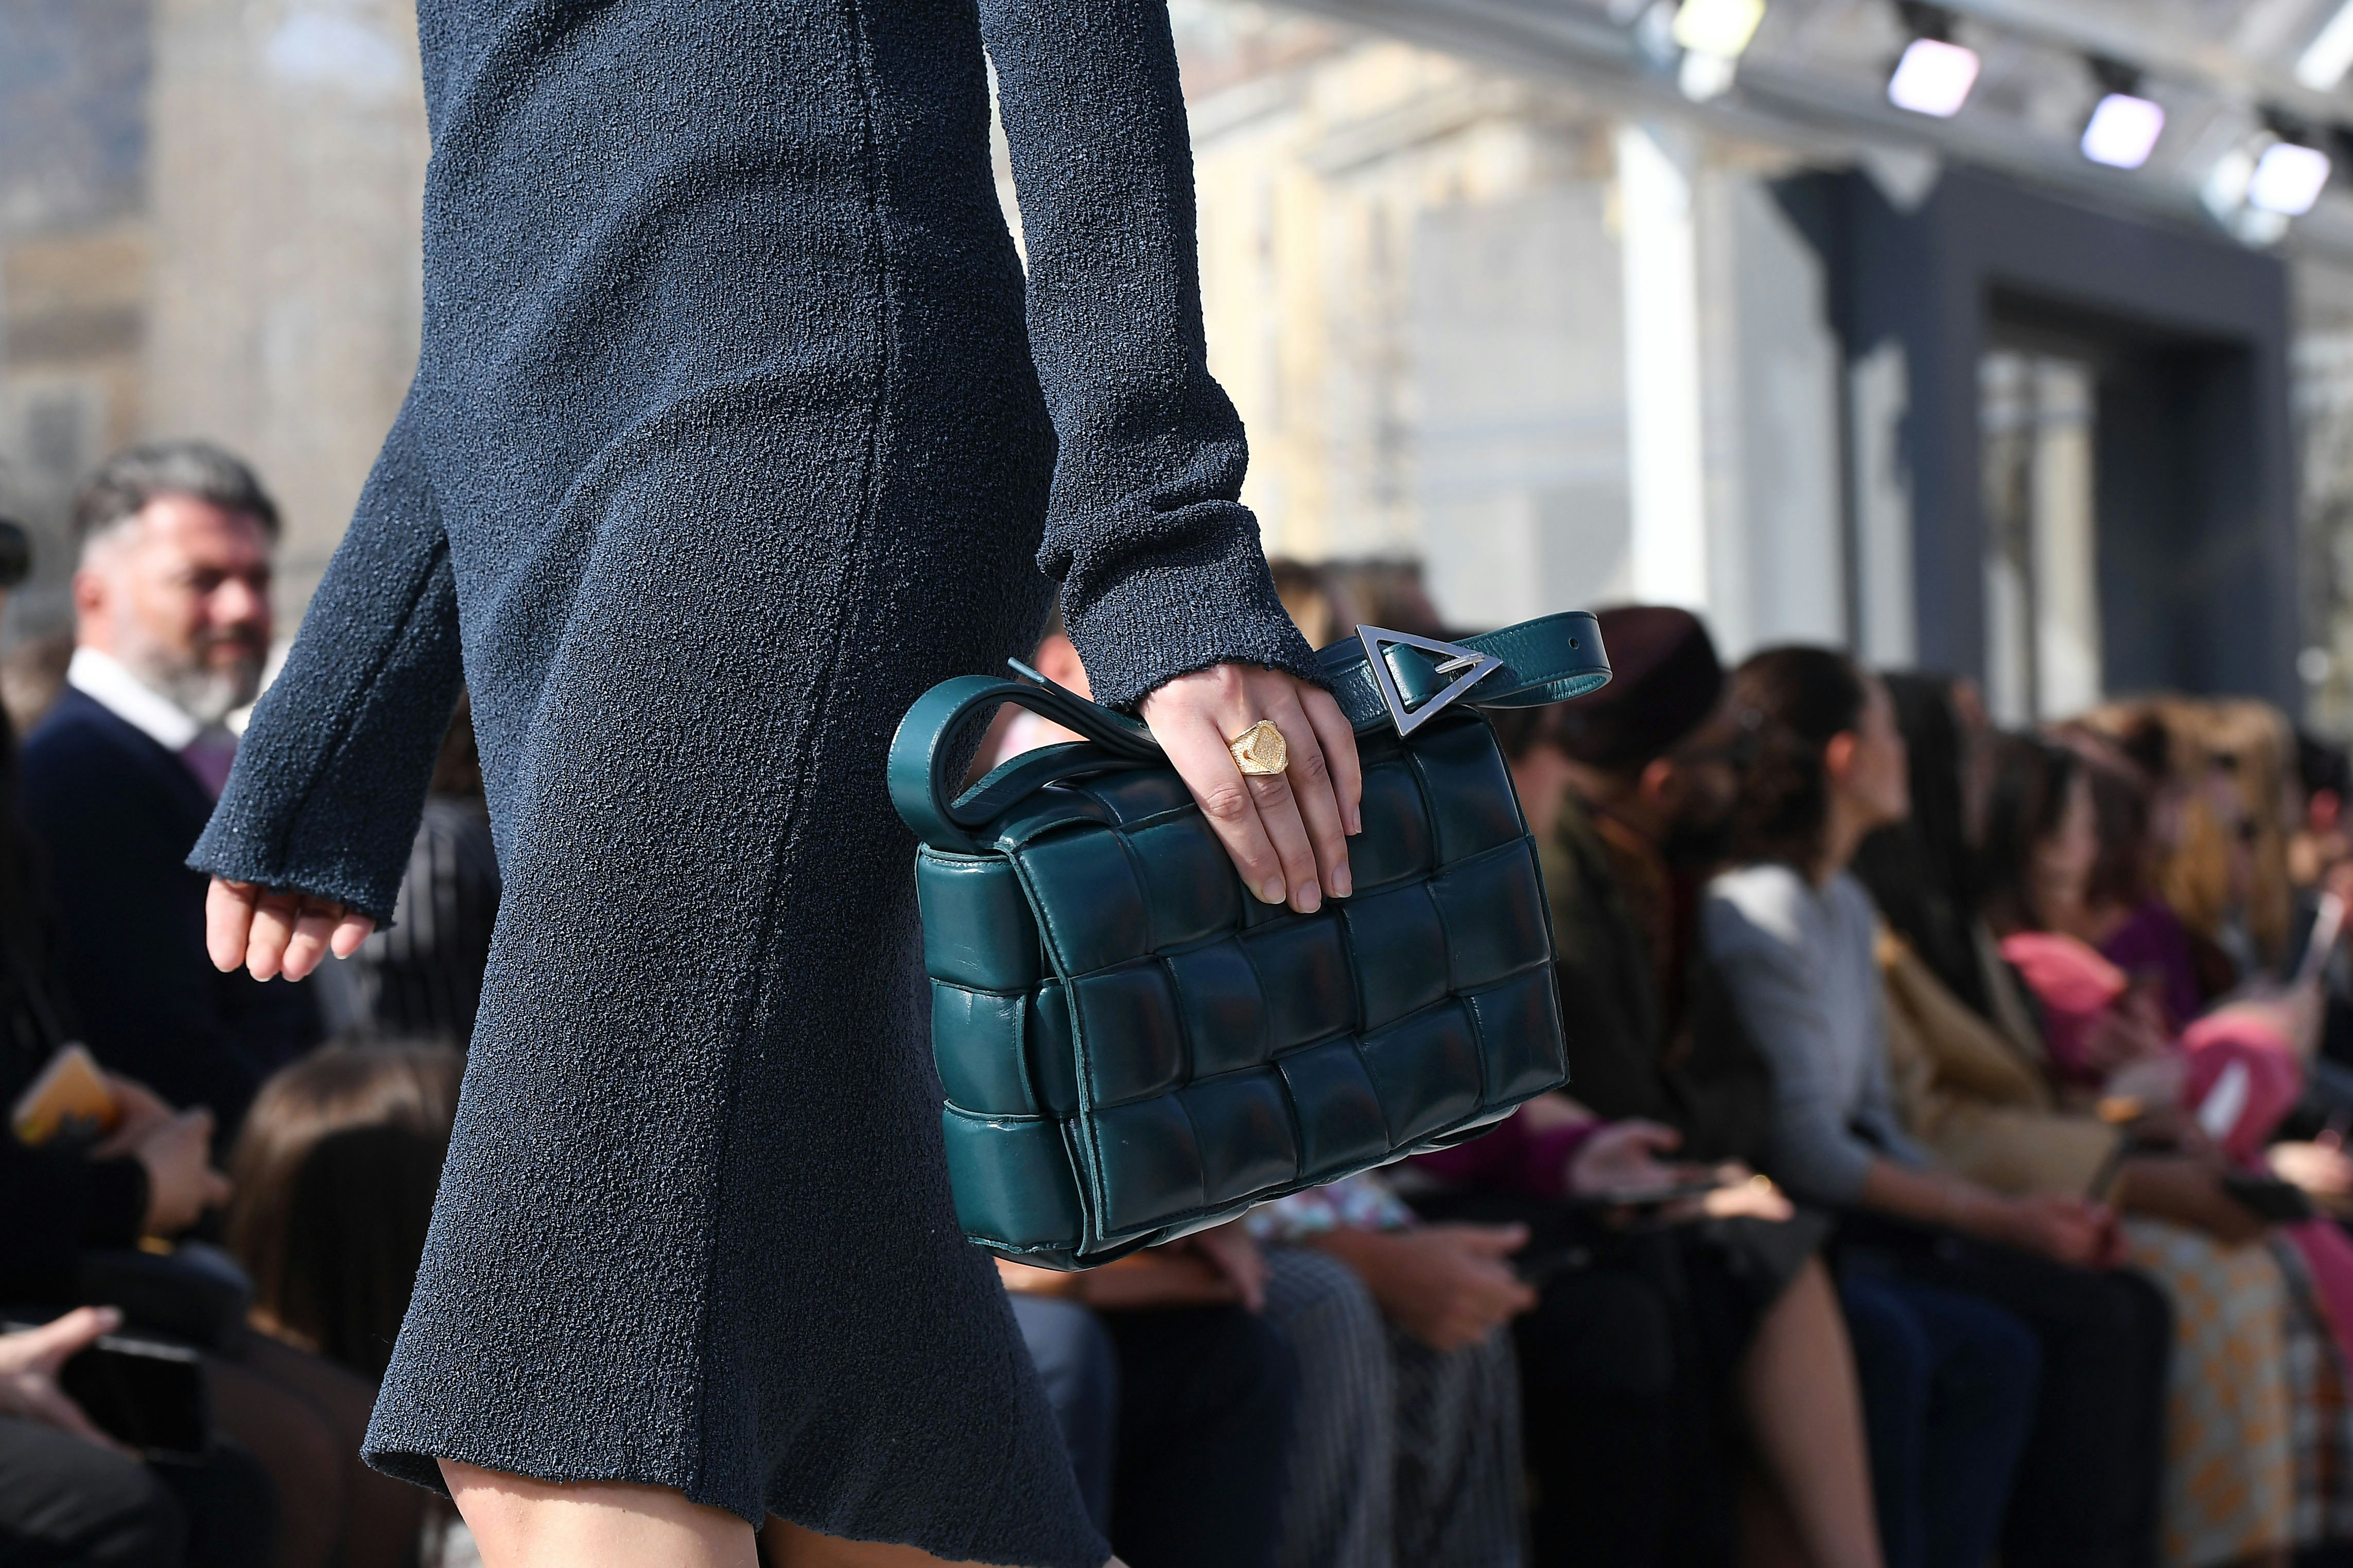 latest purse trends